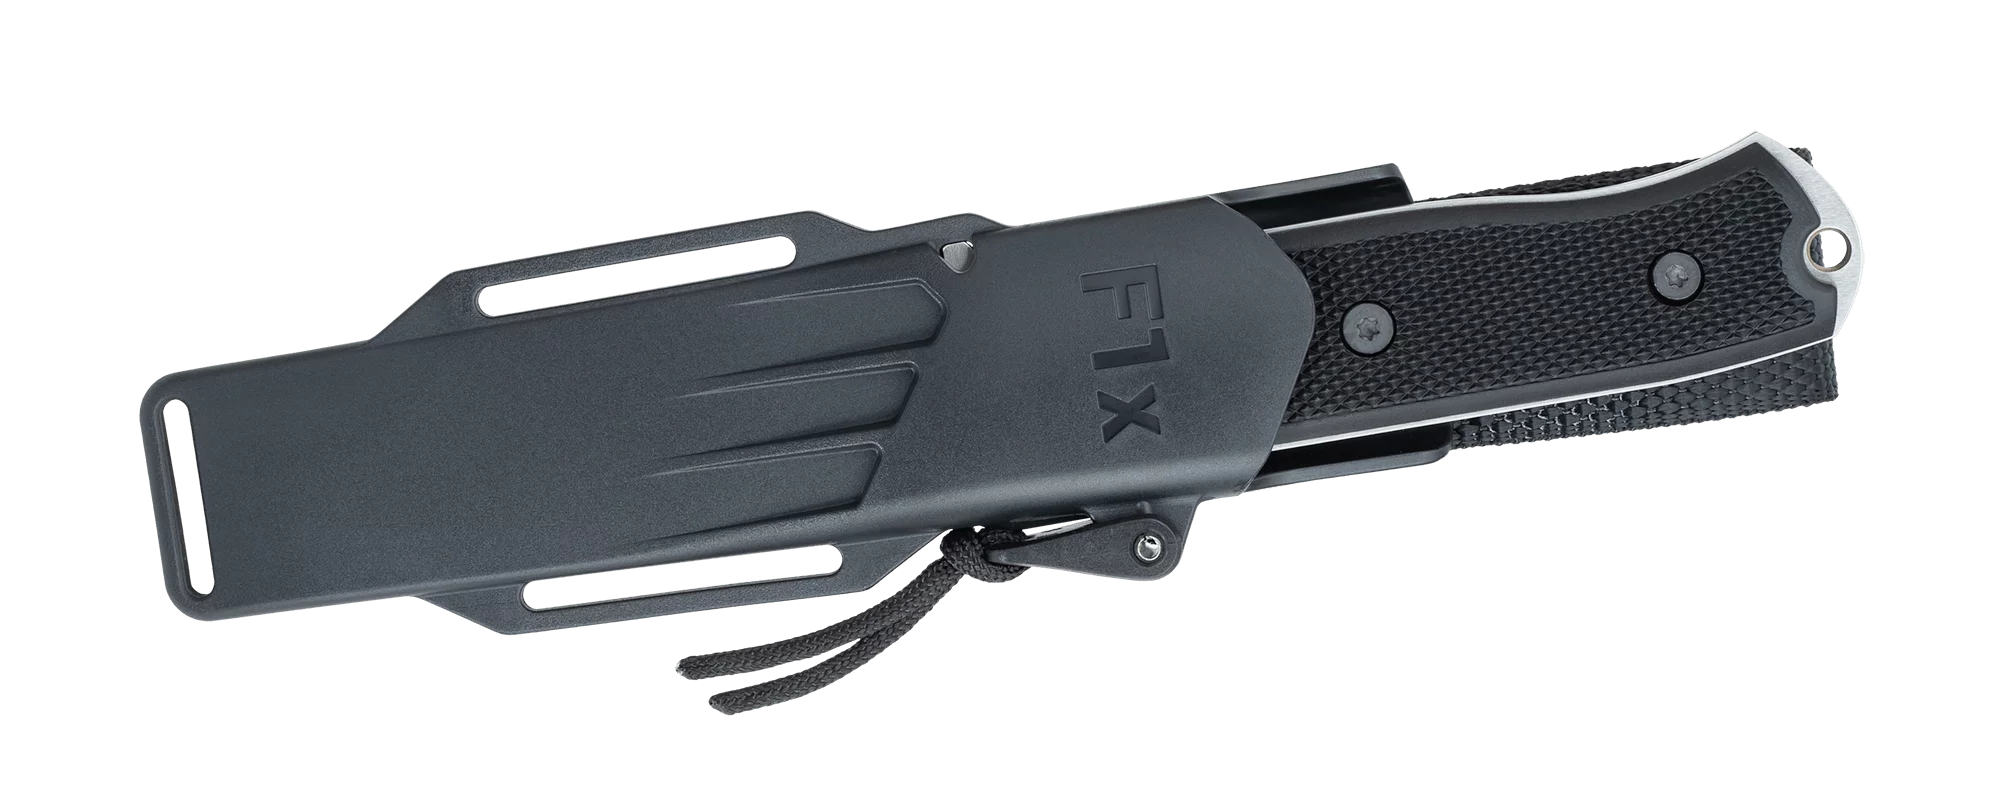 Fallkniven F1X Elmax Survival Fixed Blade Knife – Elmax Steel | Fallkniven